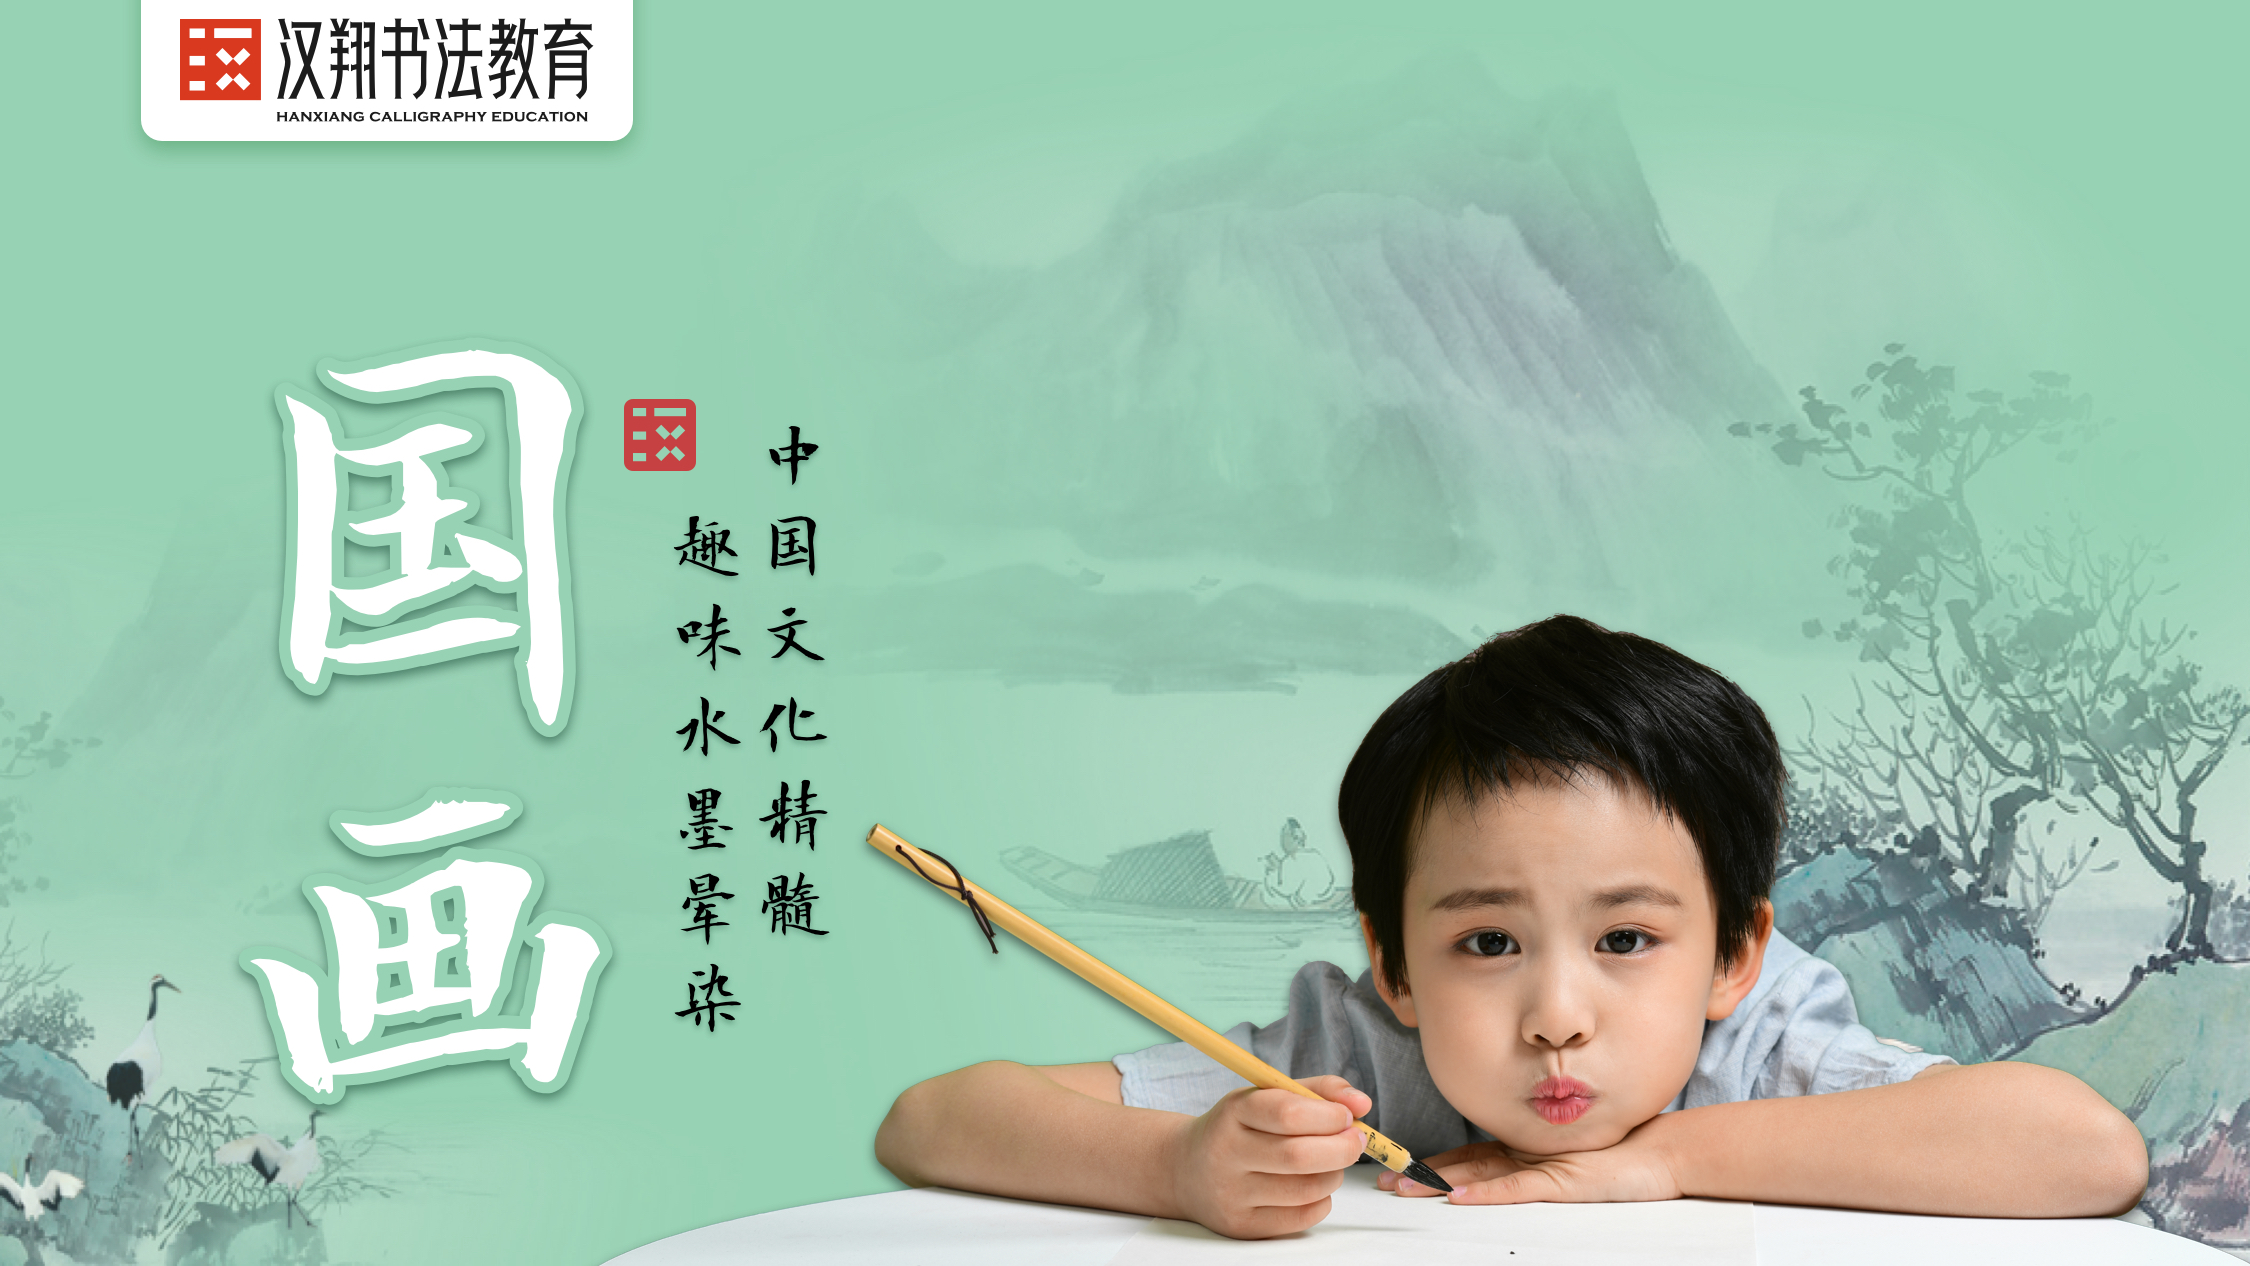 上海汉翔书法少儿国画提升课程